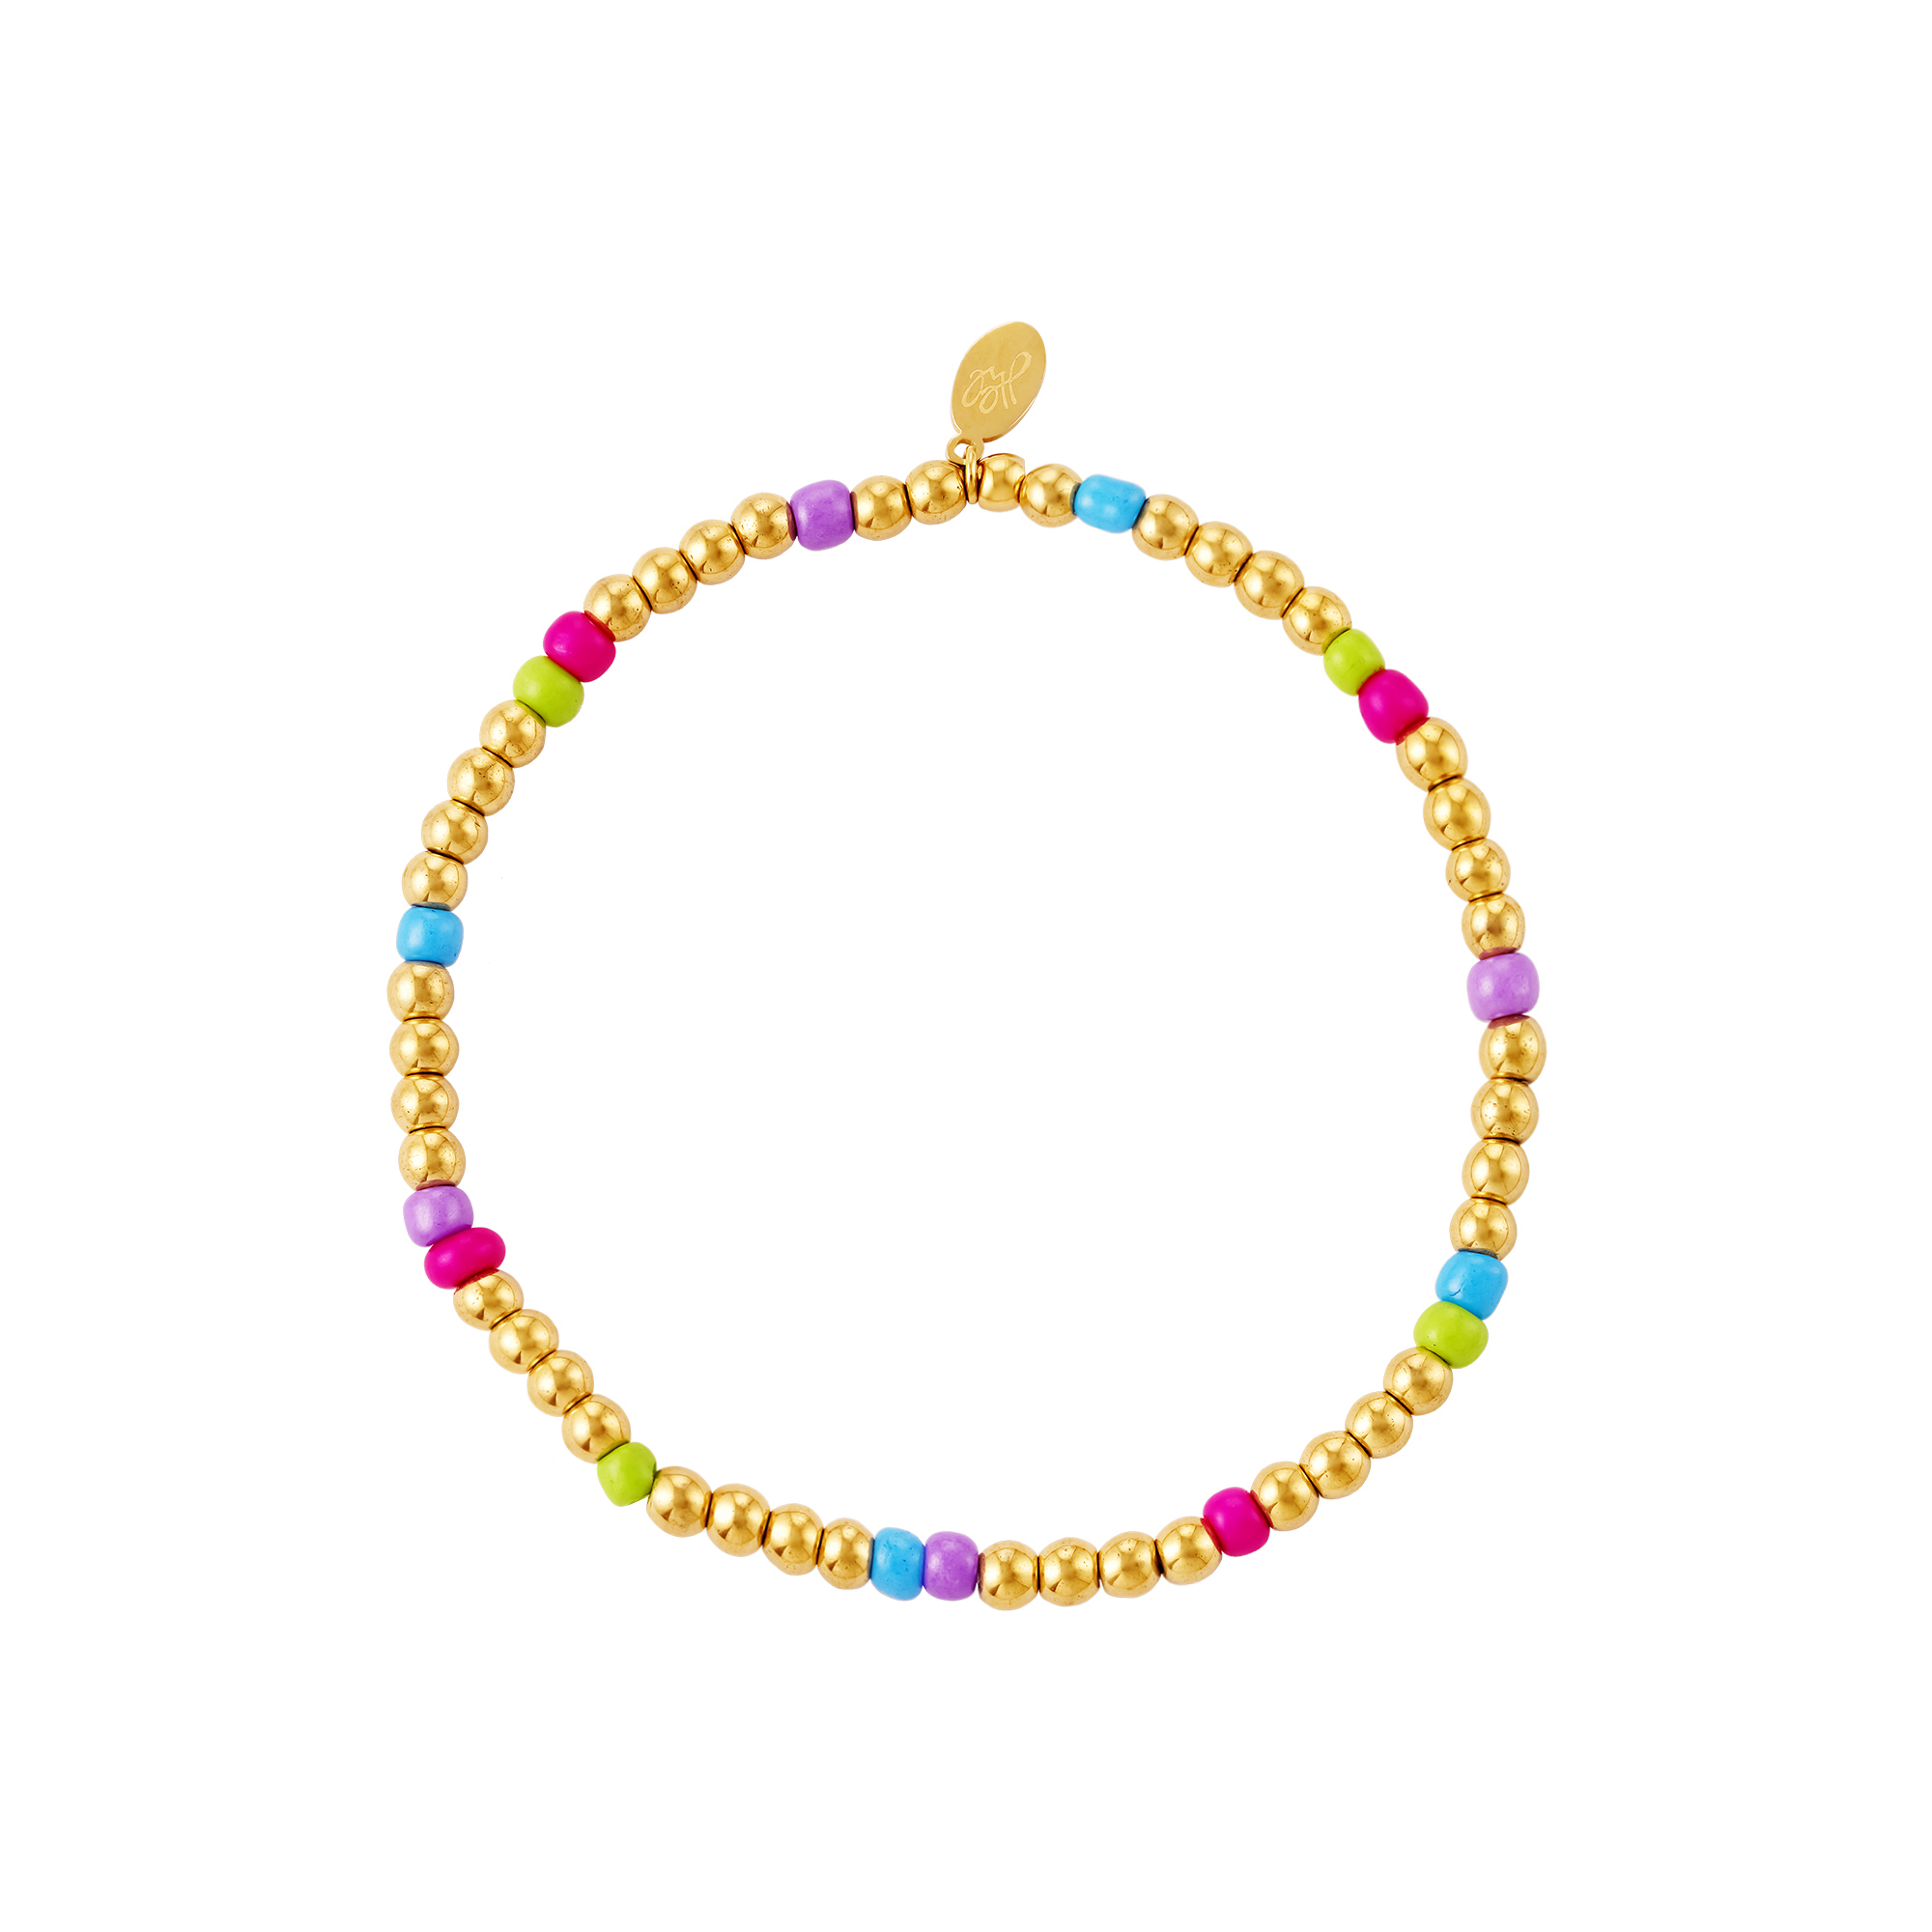 Bracelet perles colorées - collection #summergirls